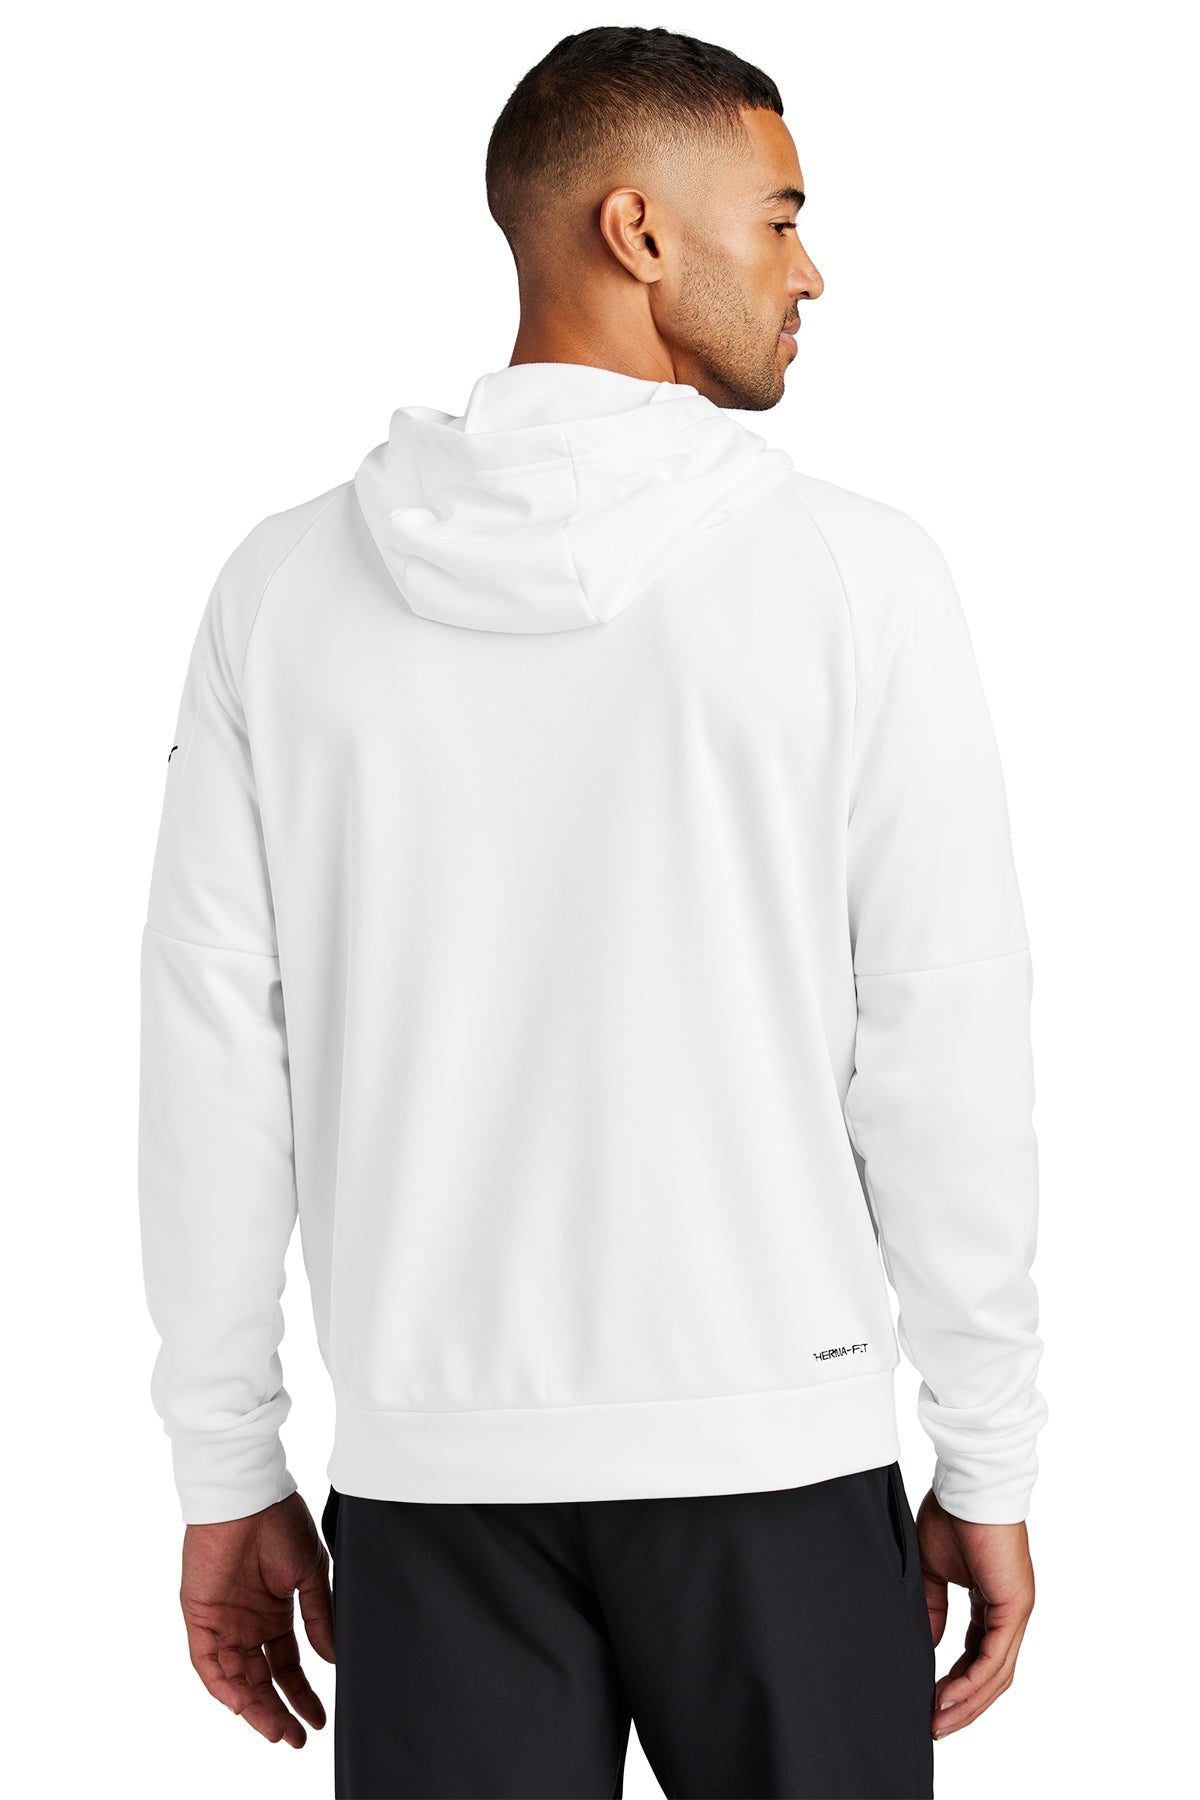 Nike Therma-FIT Pocket ZipUp Custom Hoodies, White